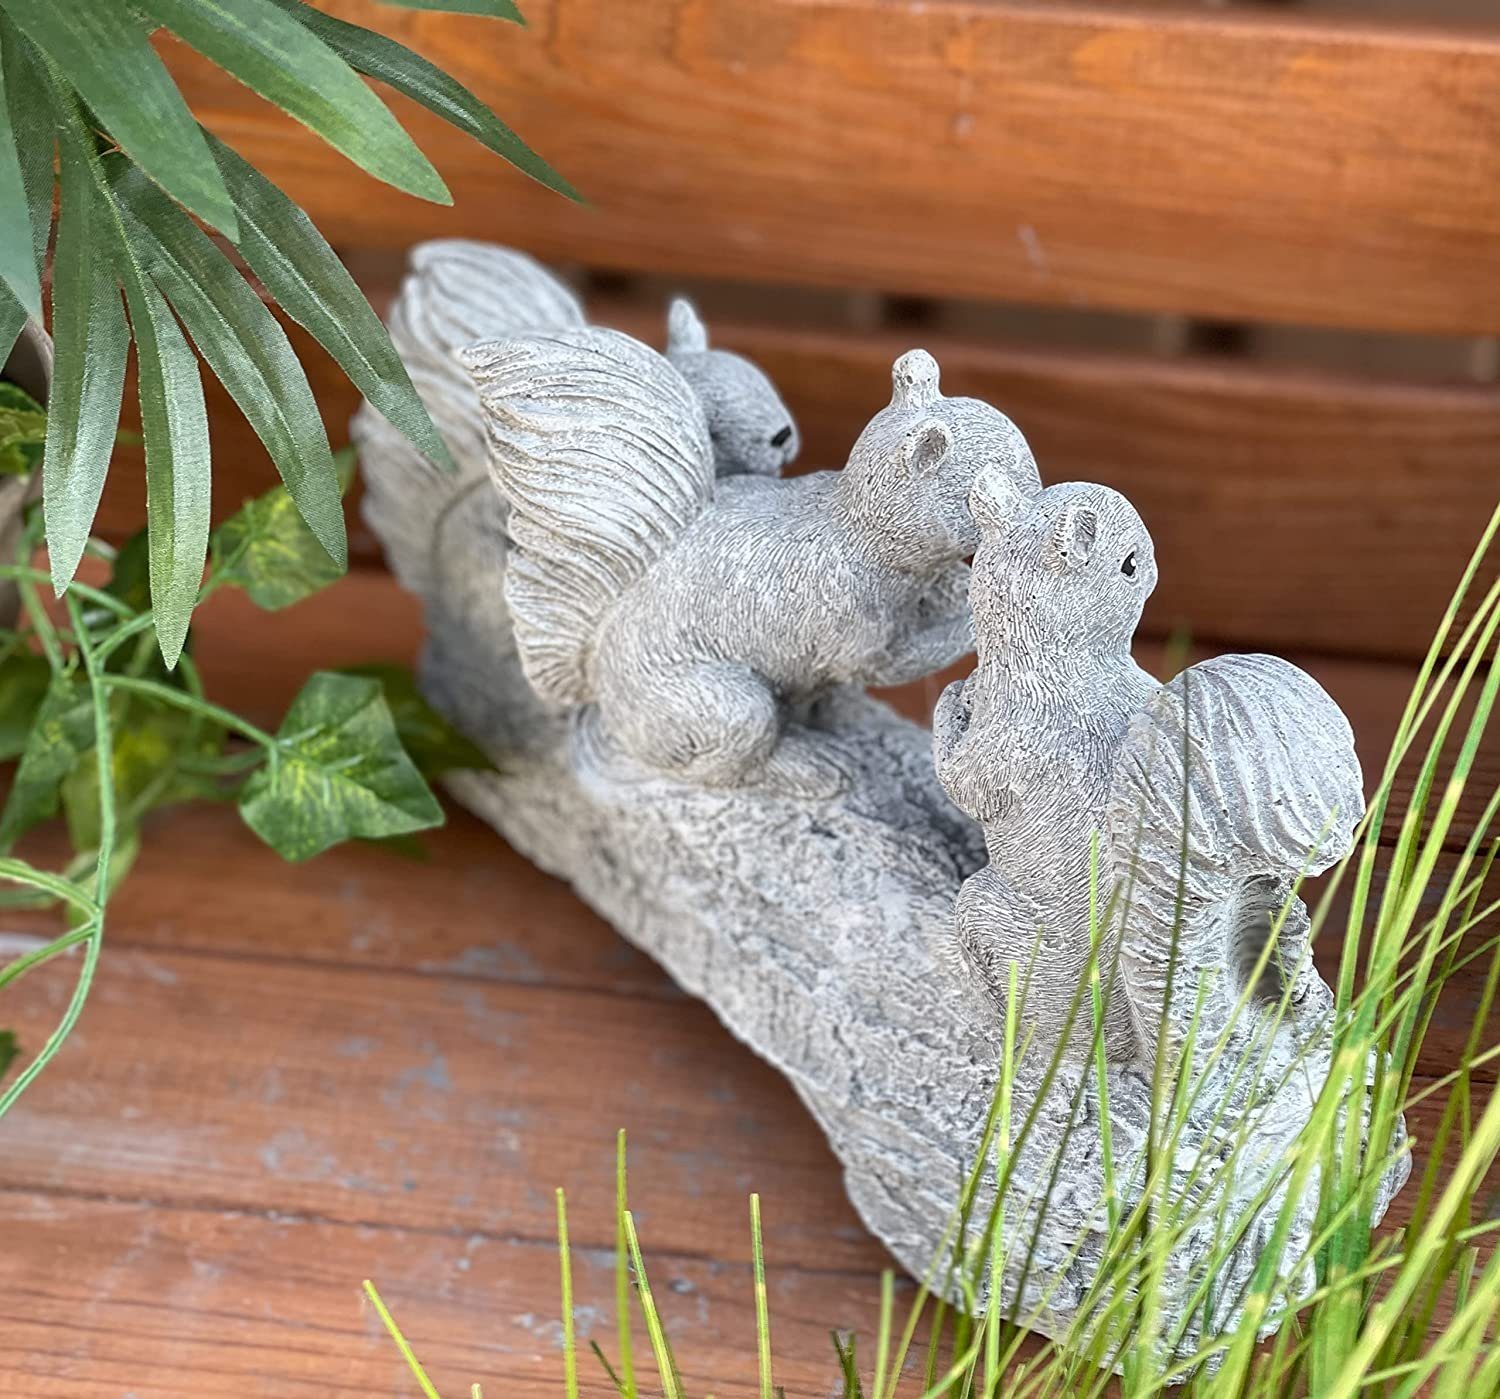 Stone and Steinfigur Style Stamm auf Gartenfigur 3 Eichhörnchen